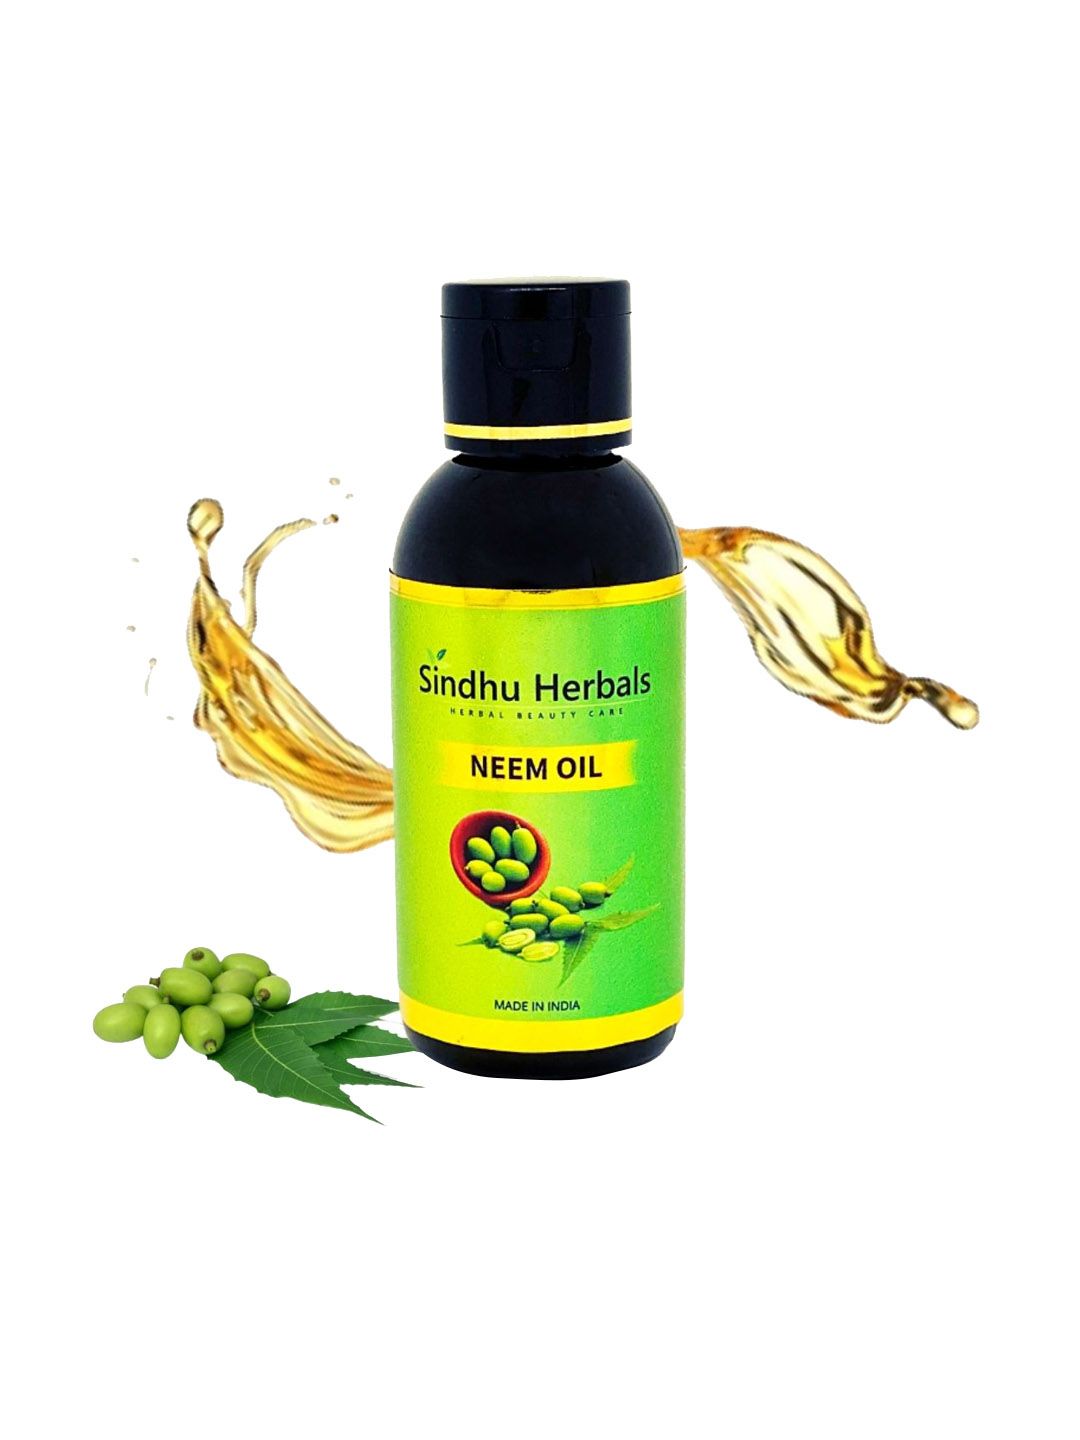 Sindhu Herbals Neem Oil 100ml Price in India